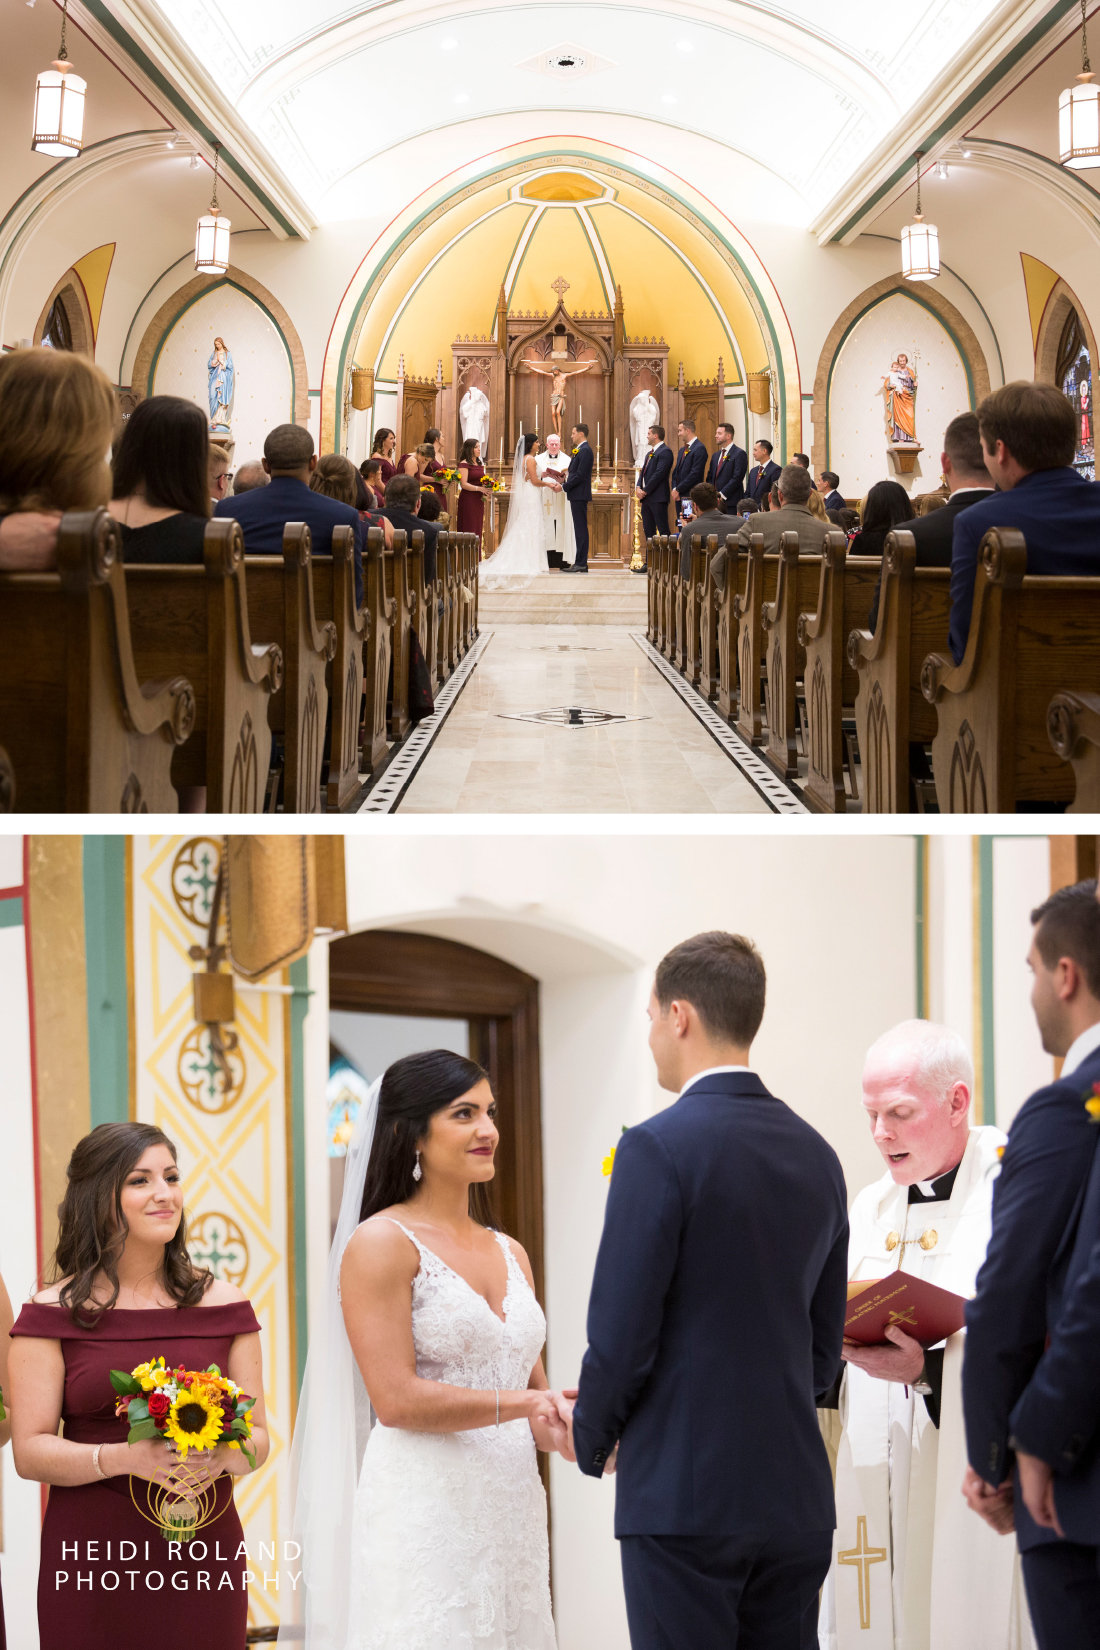 Church wedding photos